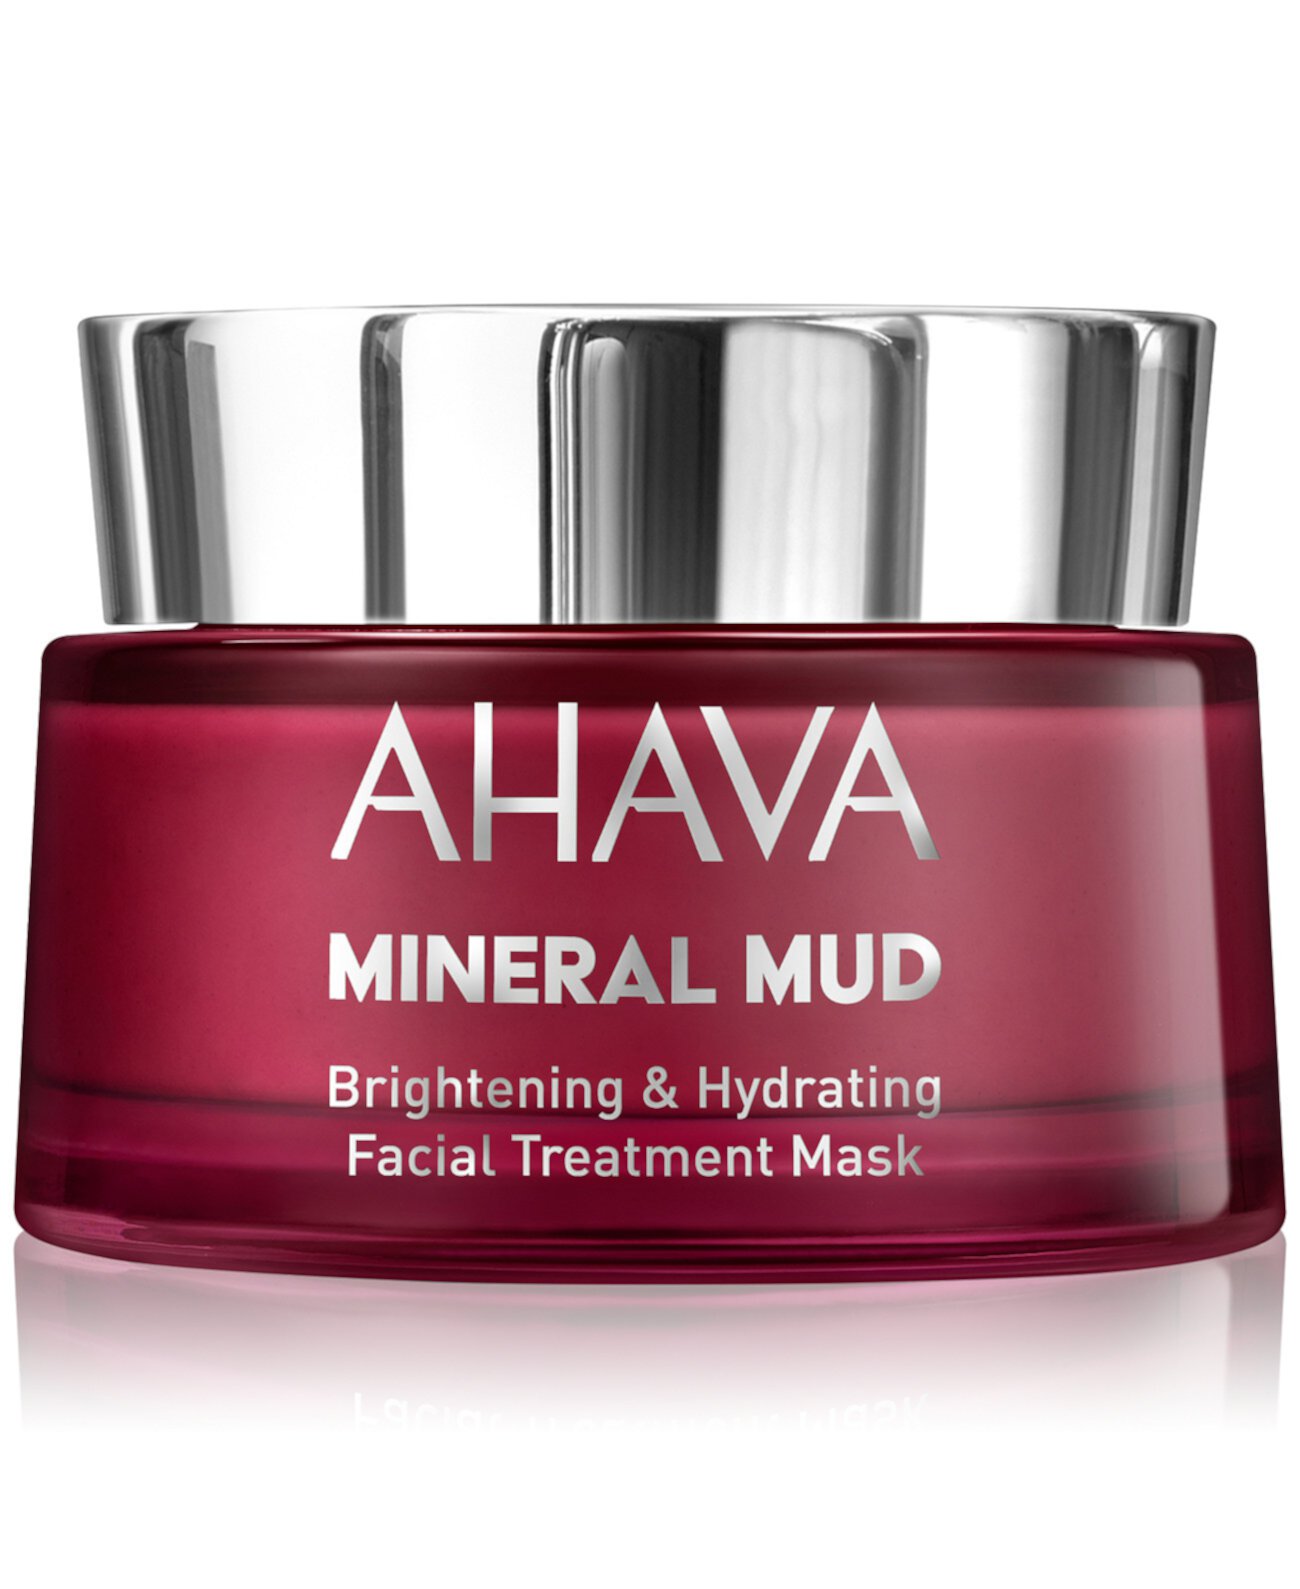 Mineral Mud Осветляющая и увлажняющая маска для лица, 1,7 унции. AHAVA